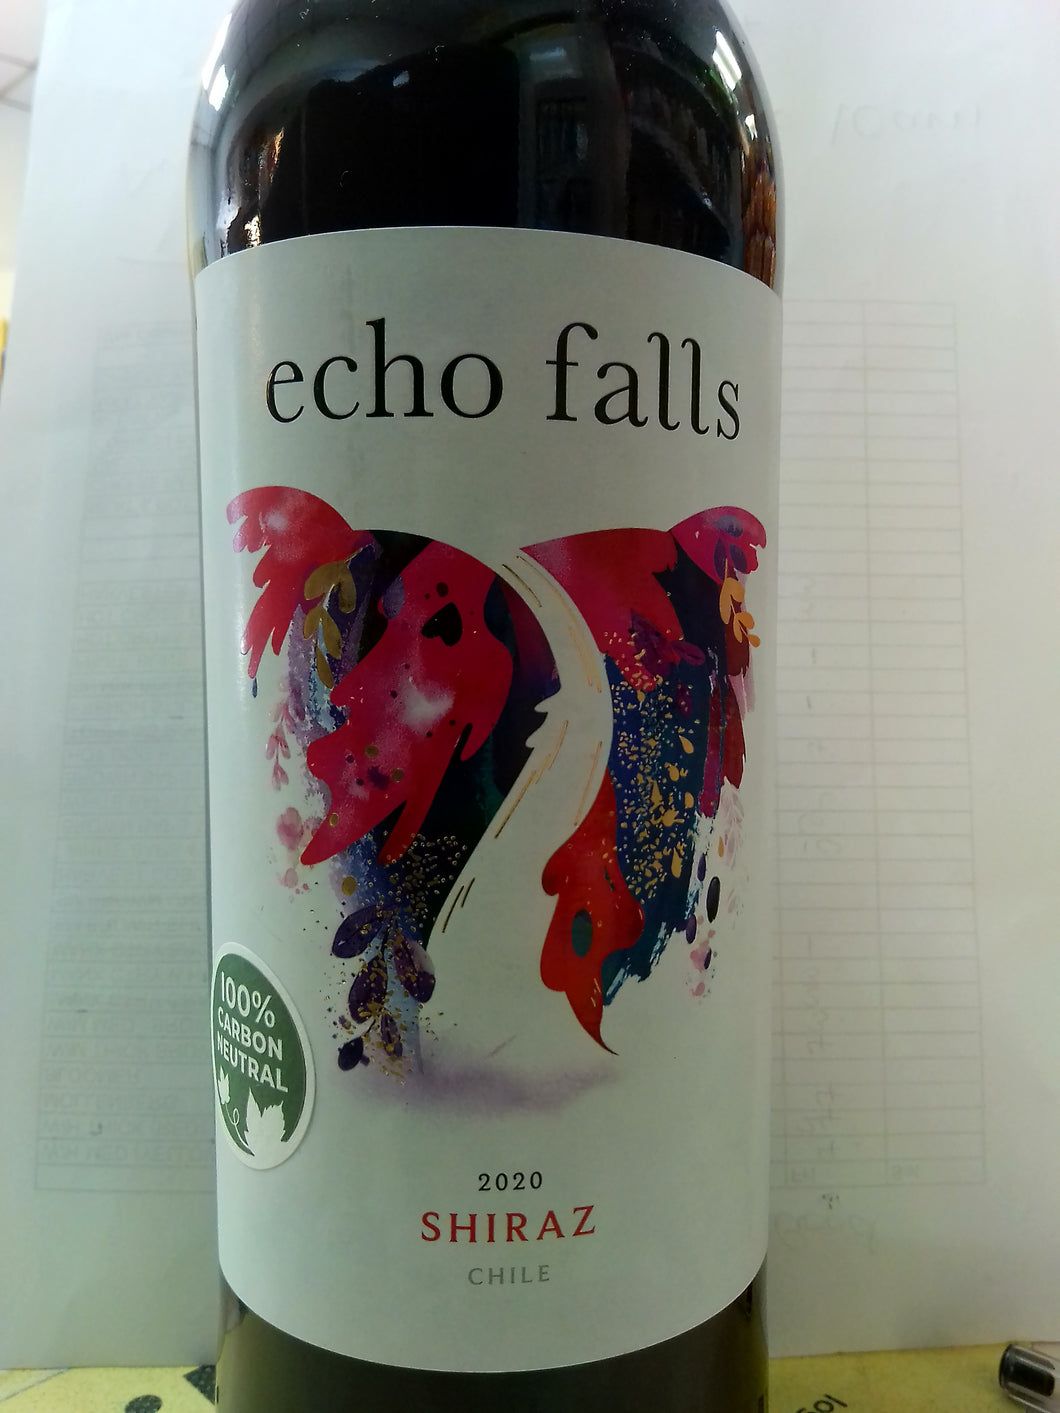 Echo falls Shiraz